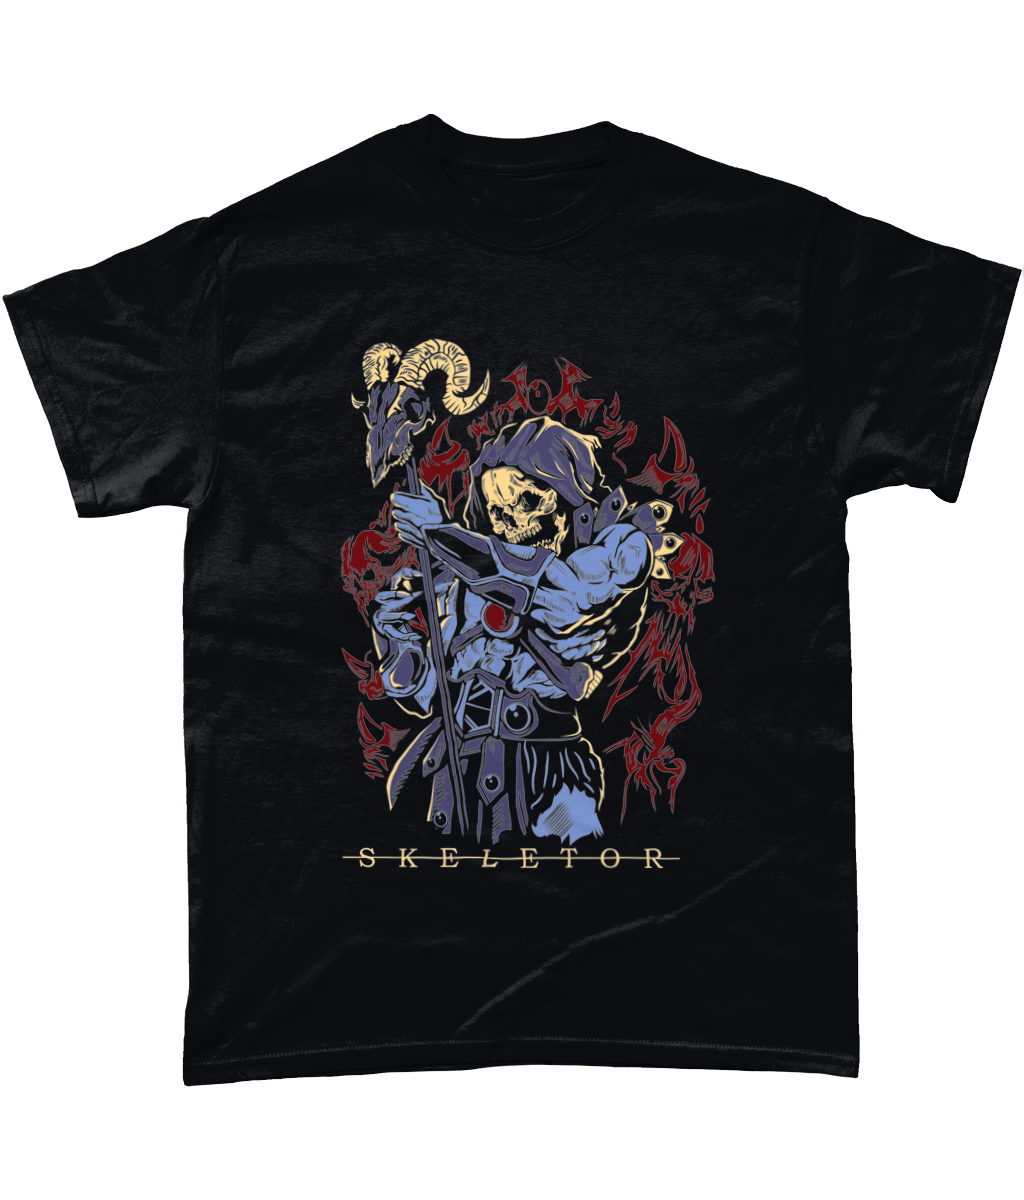 Skeletor illustration: T-Shirt